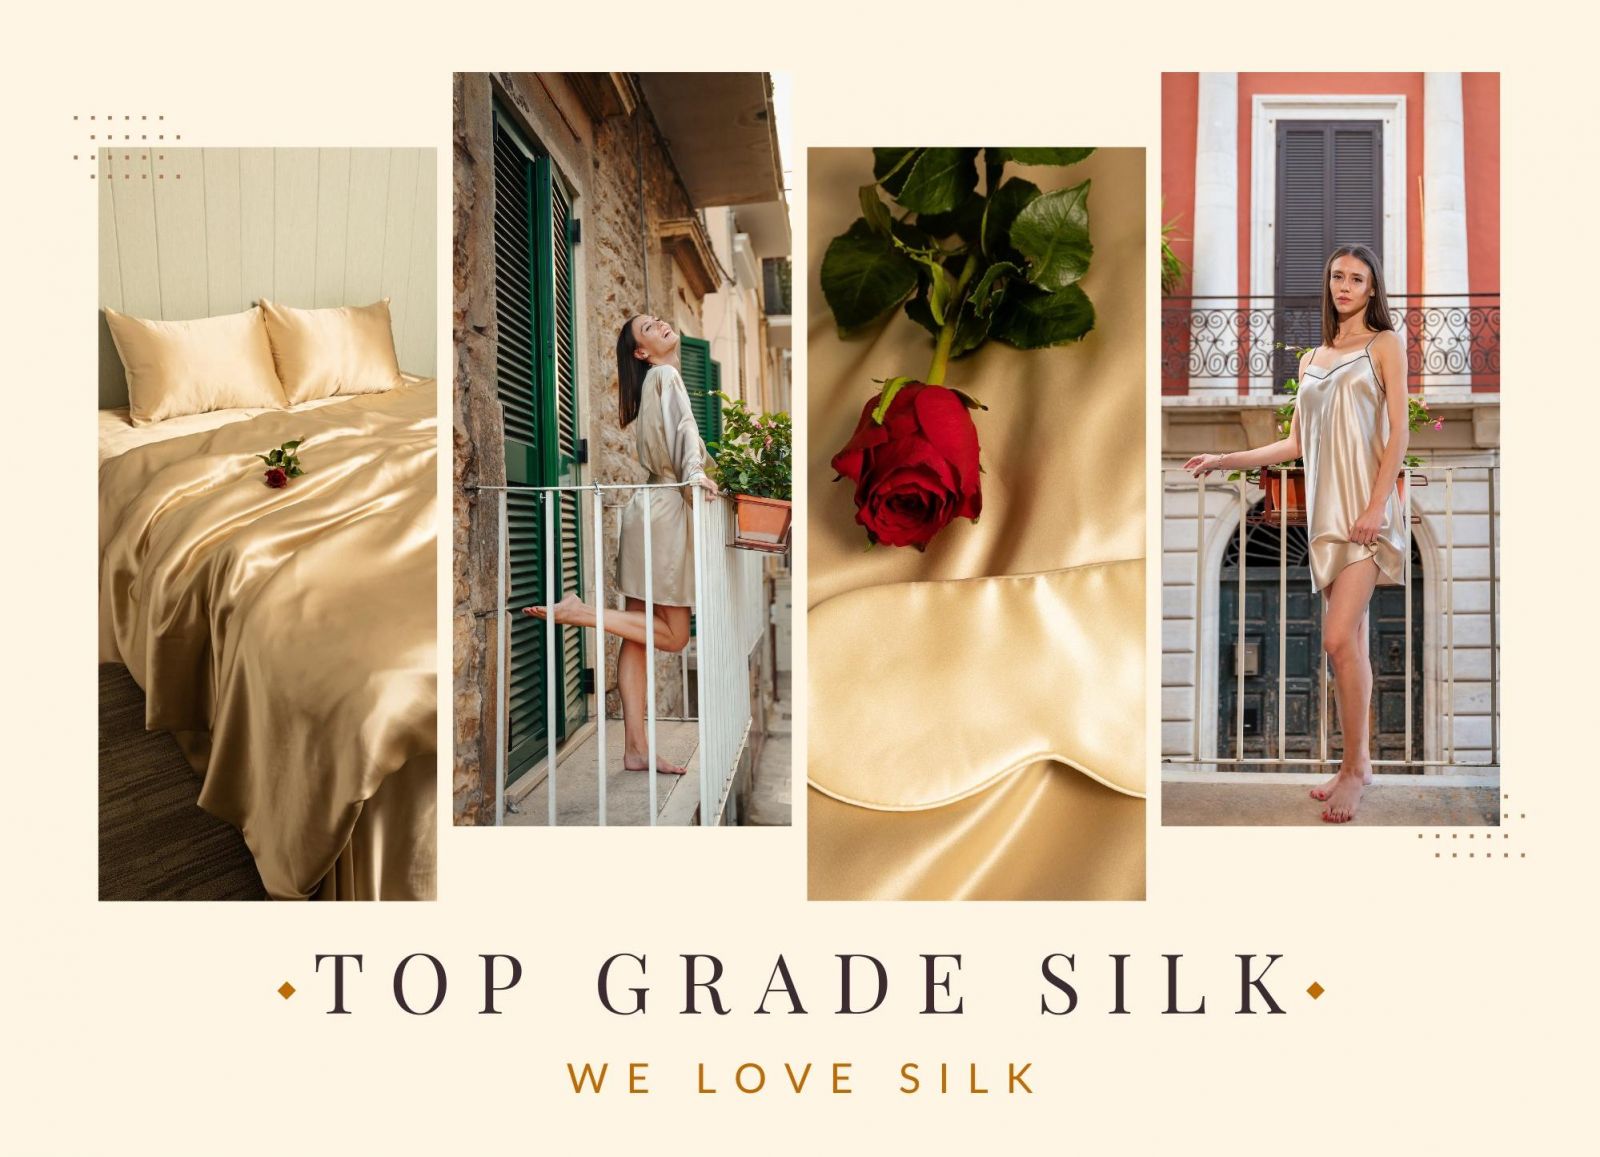 Tere tulemast Top Grade Silki! Mulberry siidist voodipesu, siidimaskid, ööriided, hommikumantlid, juuksekummid.